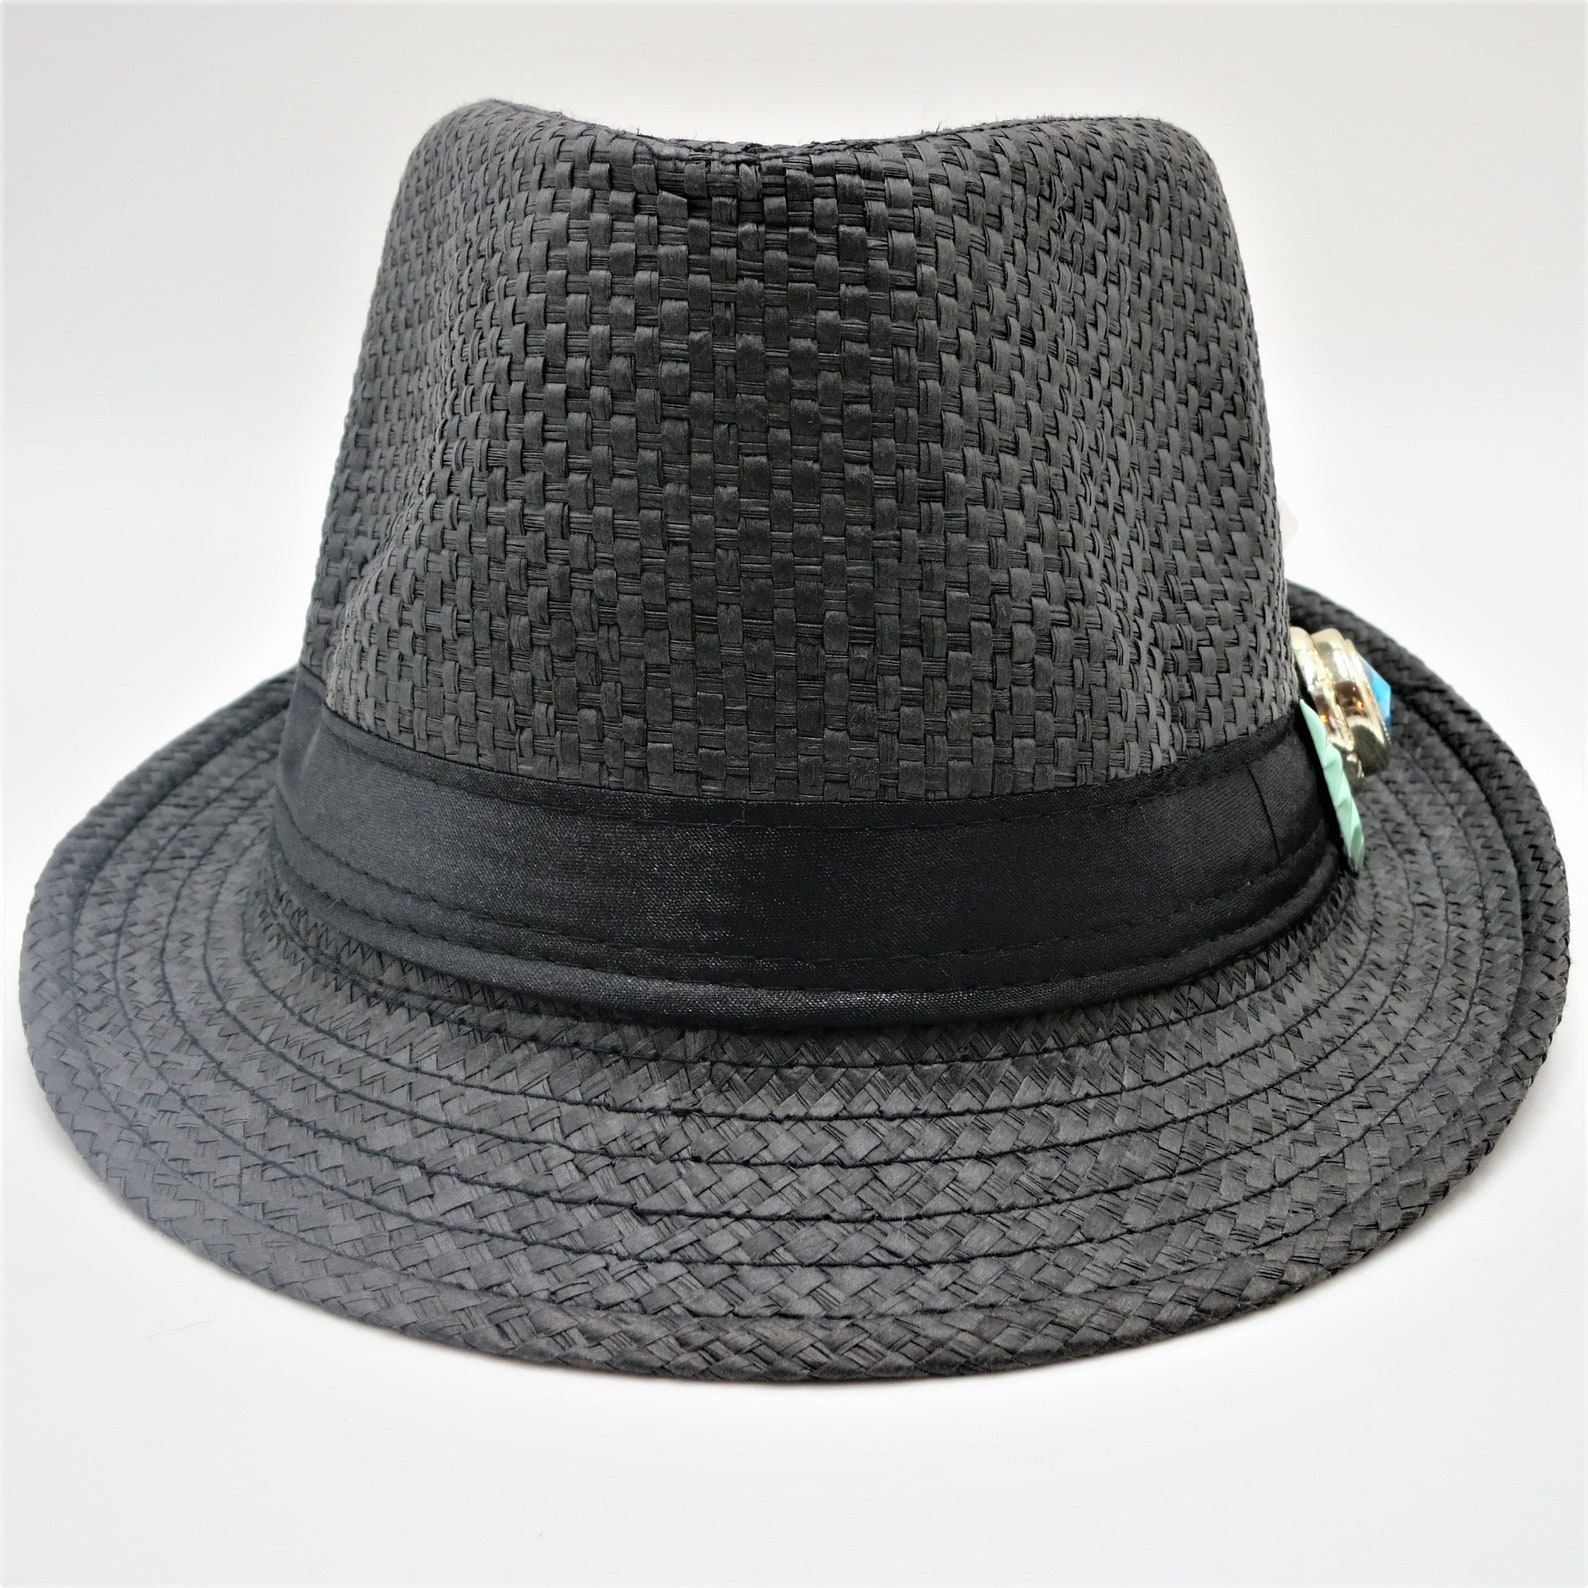 Fedora Black Straw Hat Black Band Vintage Upcycled Blue - Etsy UK